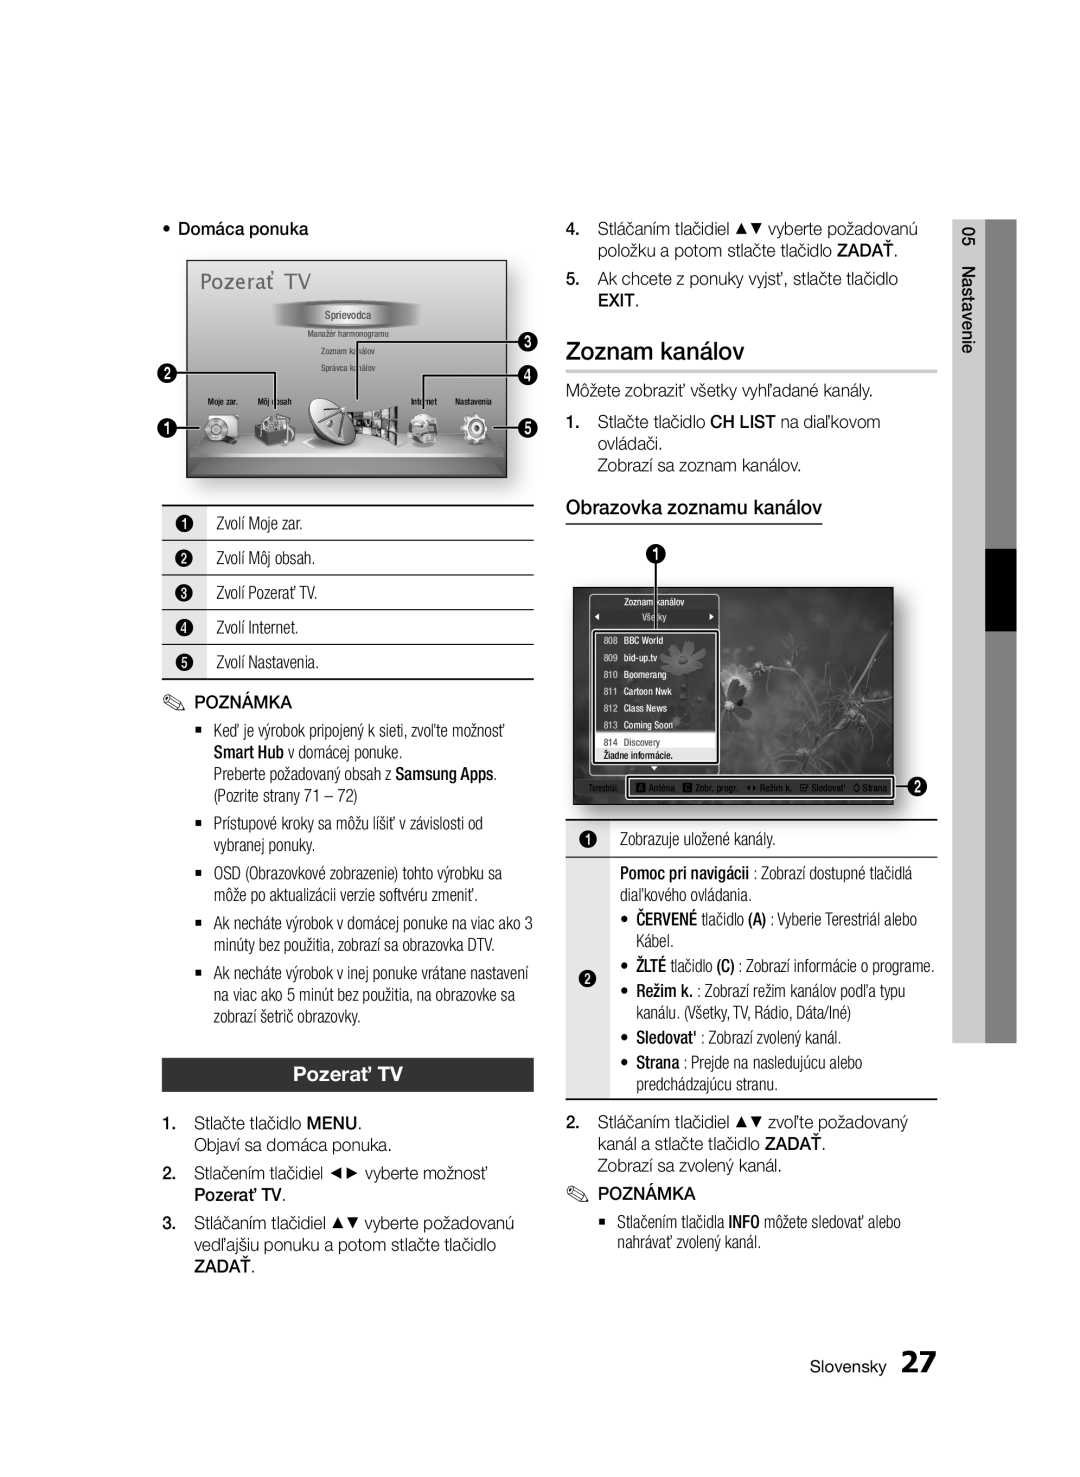 Samsung BD-E6300/EN manual Zoznam kanálov, Pozerať TV, Obrazovka zoznamu kanálov, Domáca ponuka 